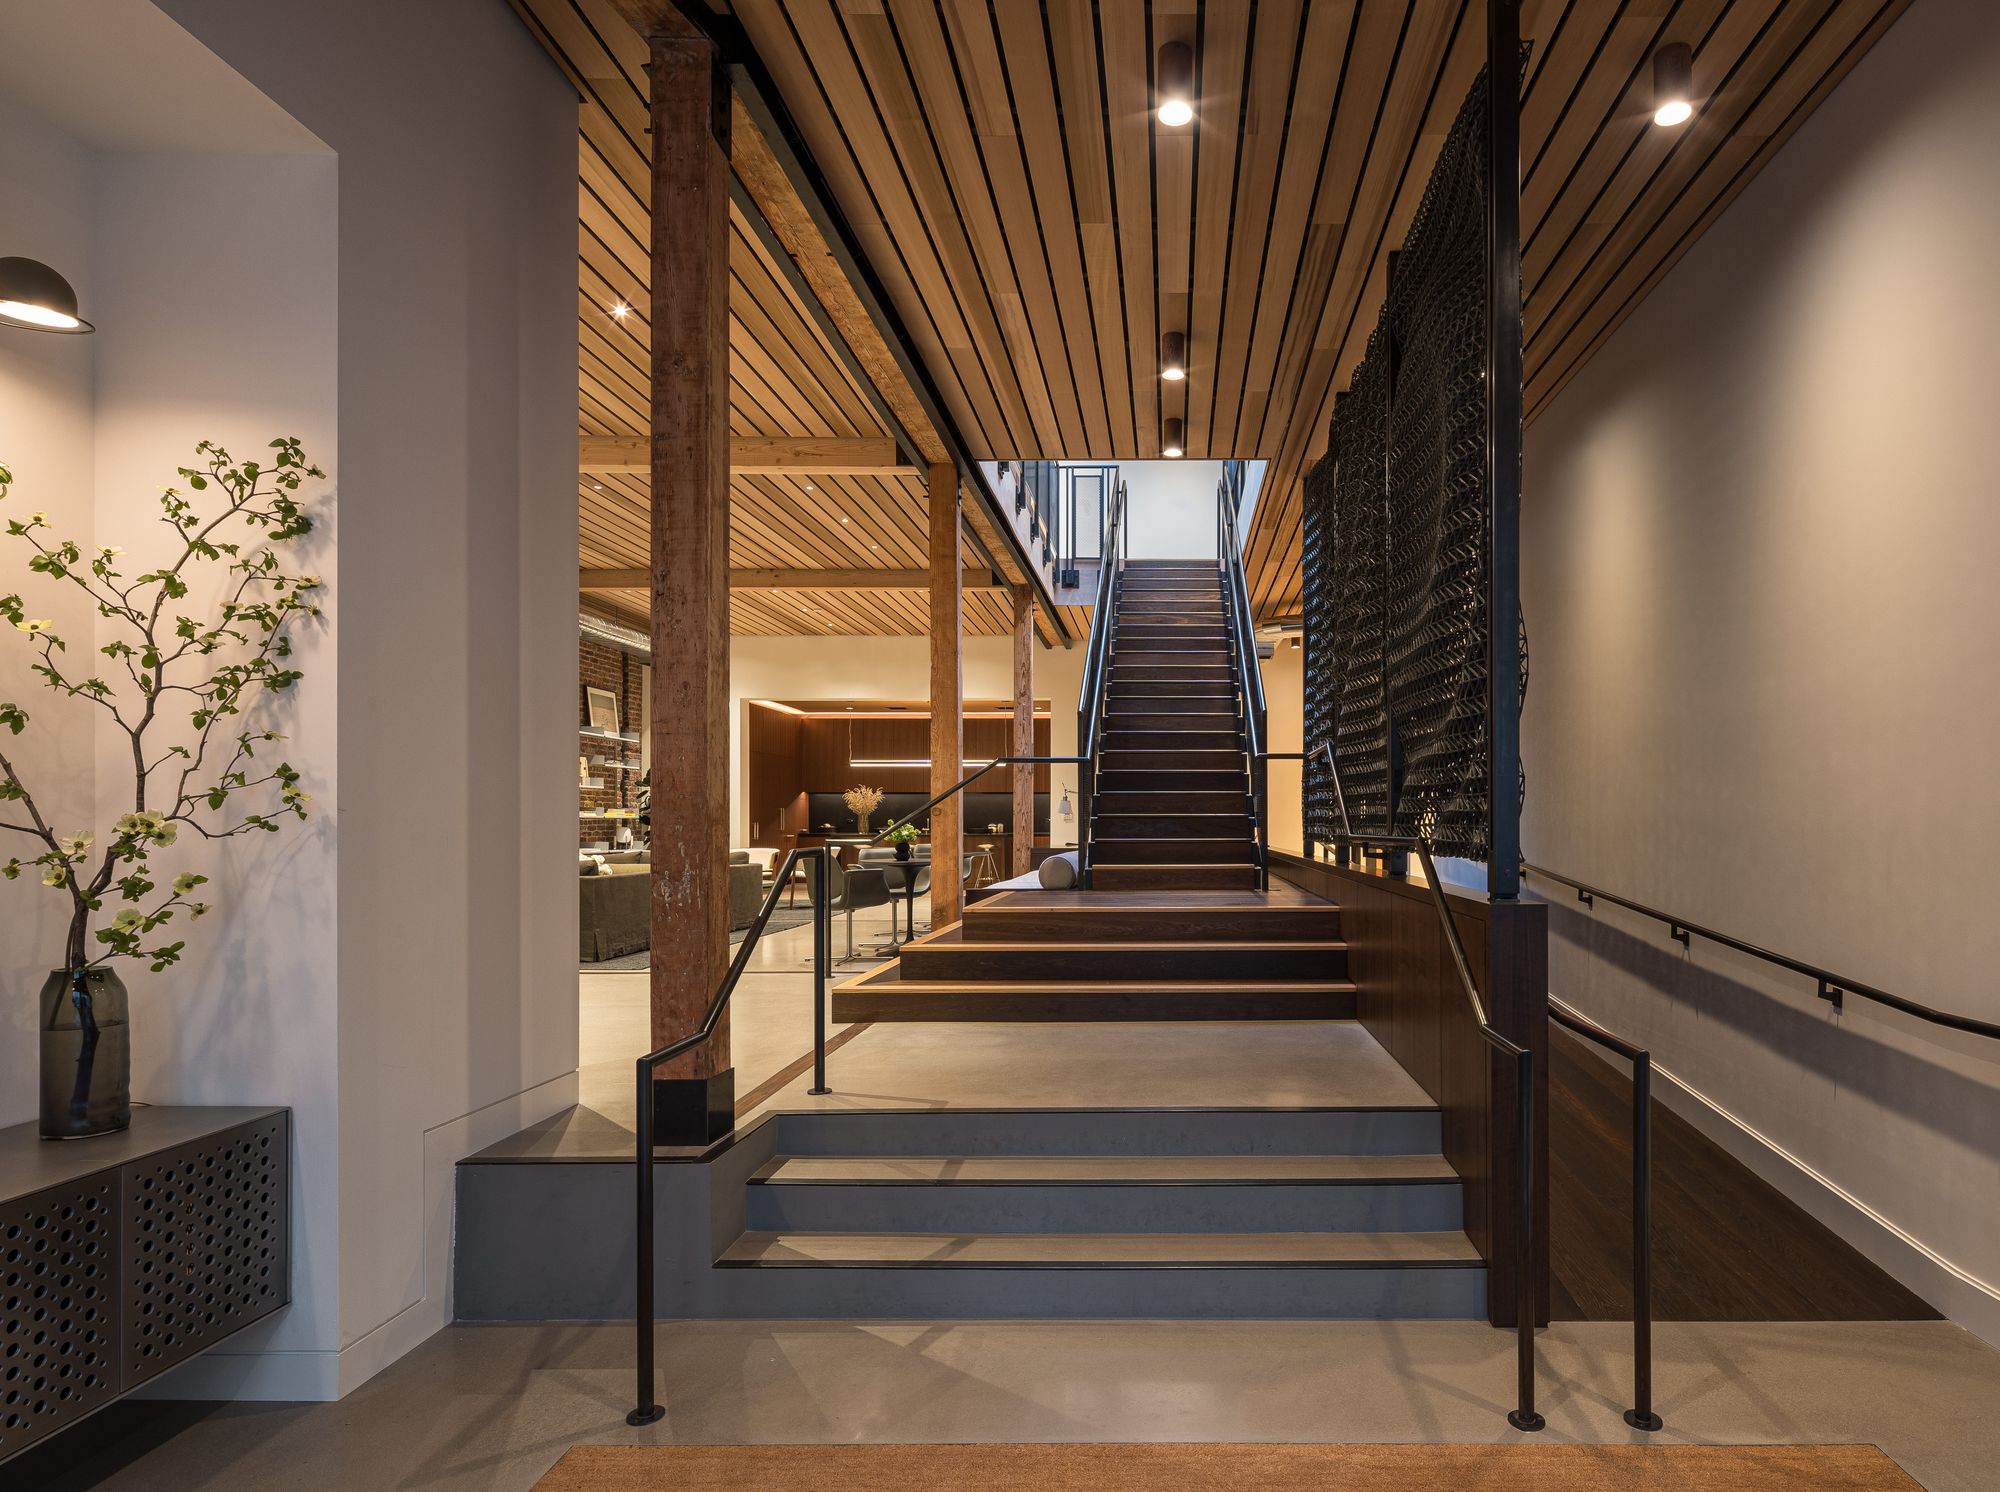 风险投资公司机密办公室——旧金山|ART-Arrakis | 建筑室内设计的创新与灵感